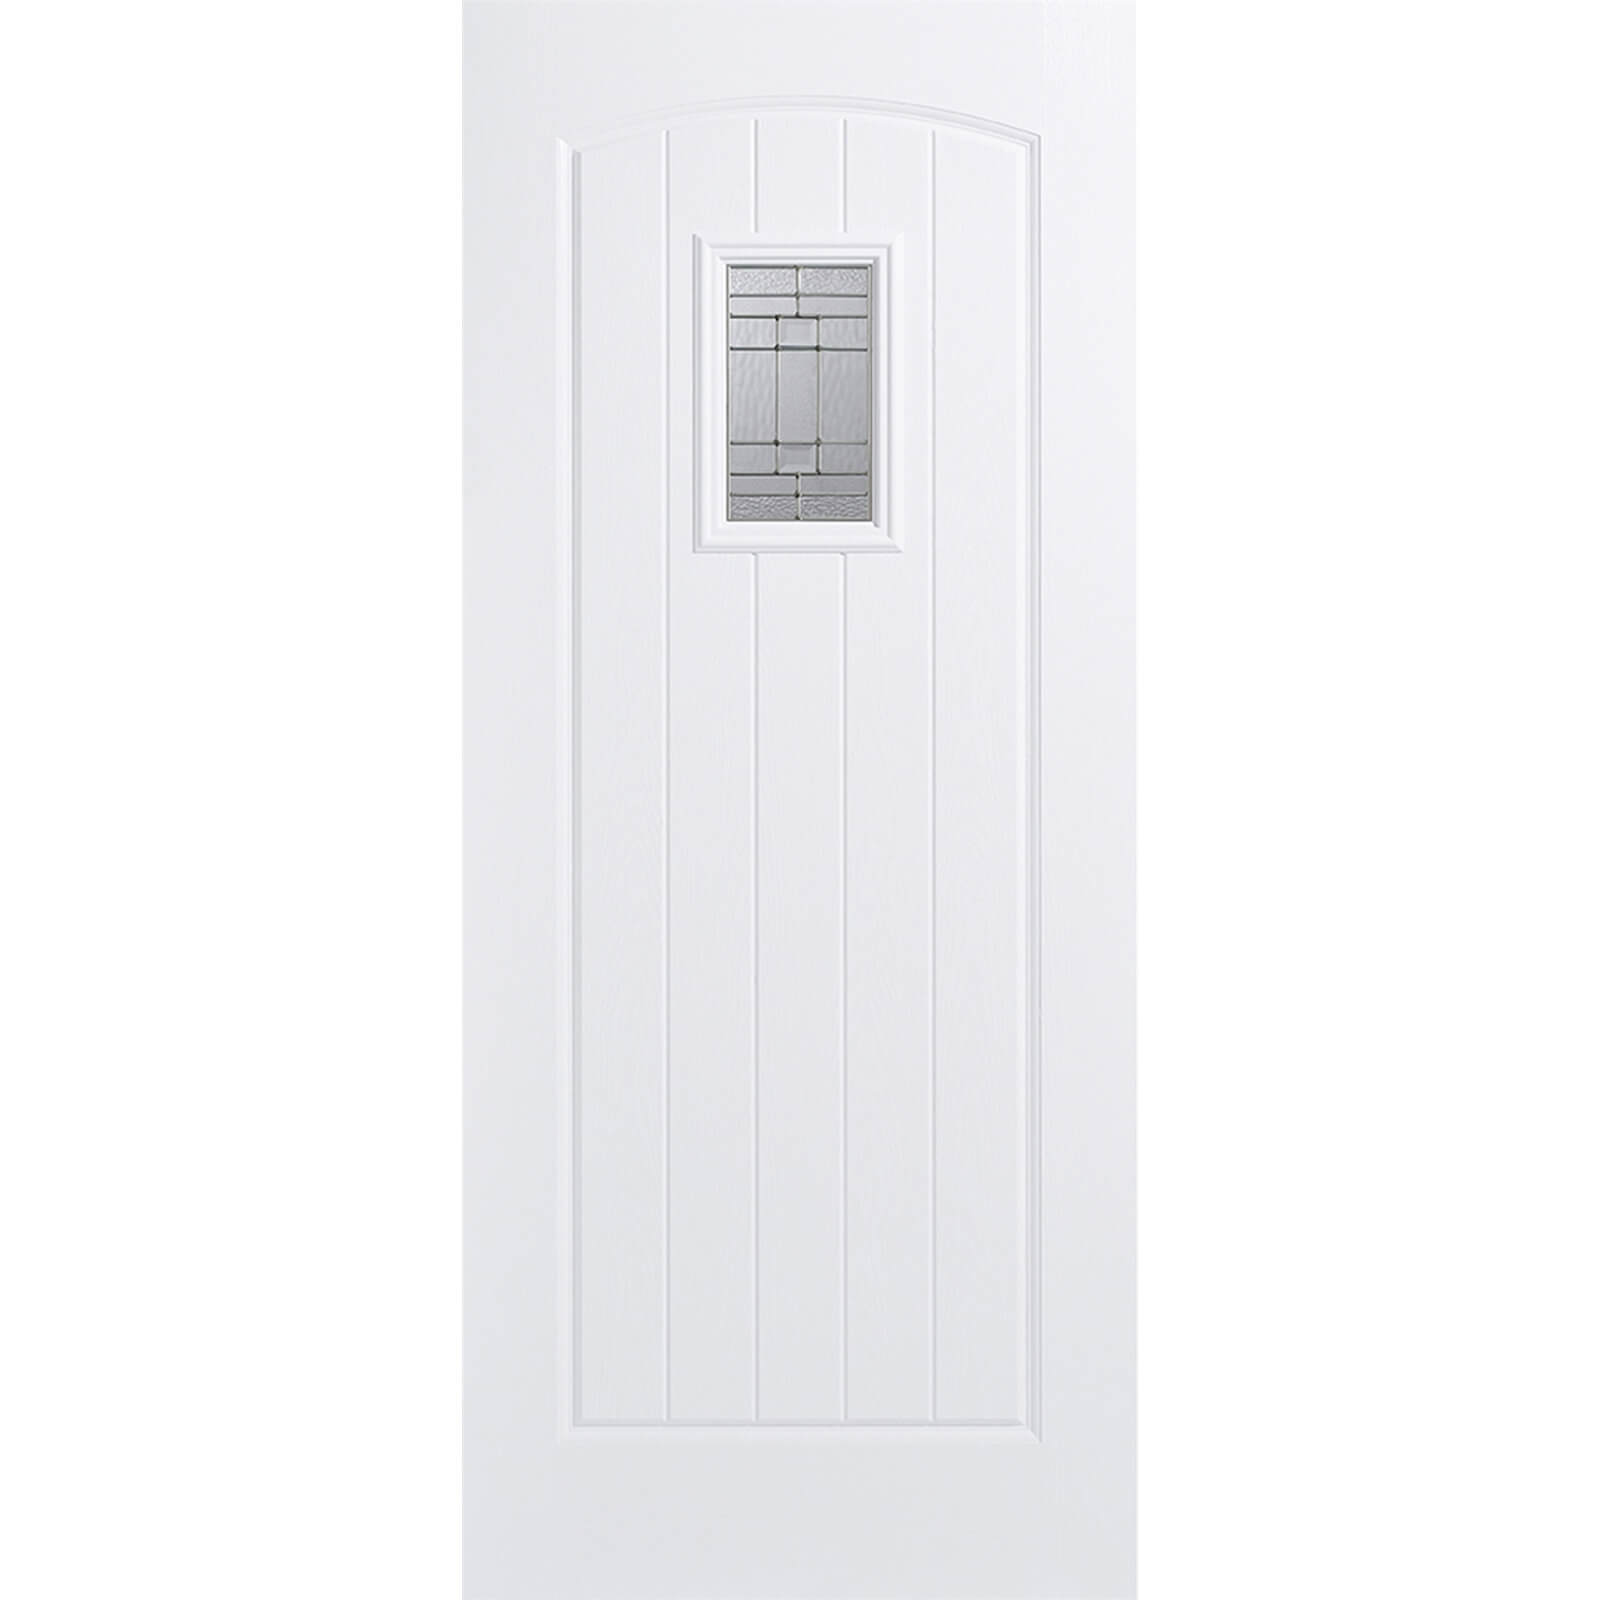 Cottage External Glazed White GRP 1 Lite Door - 813 x 2032mm